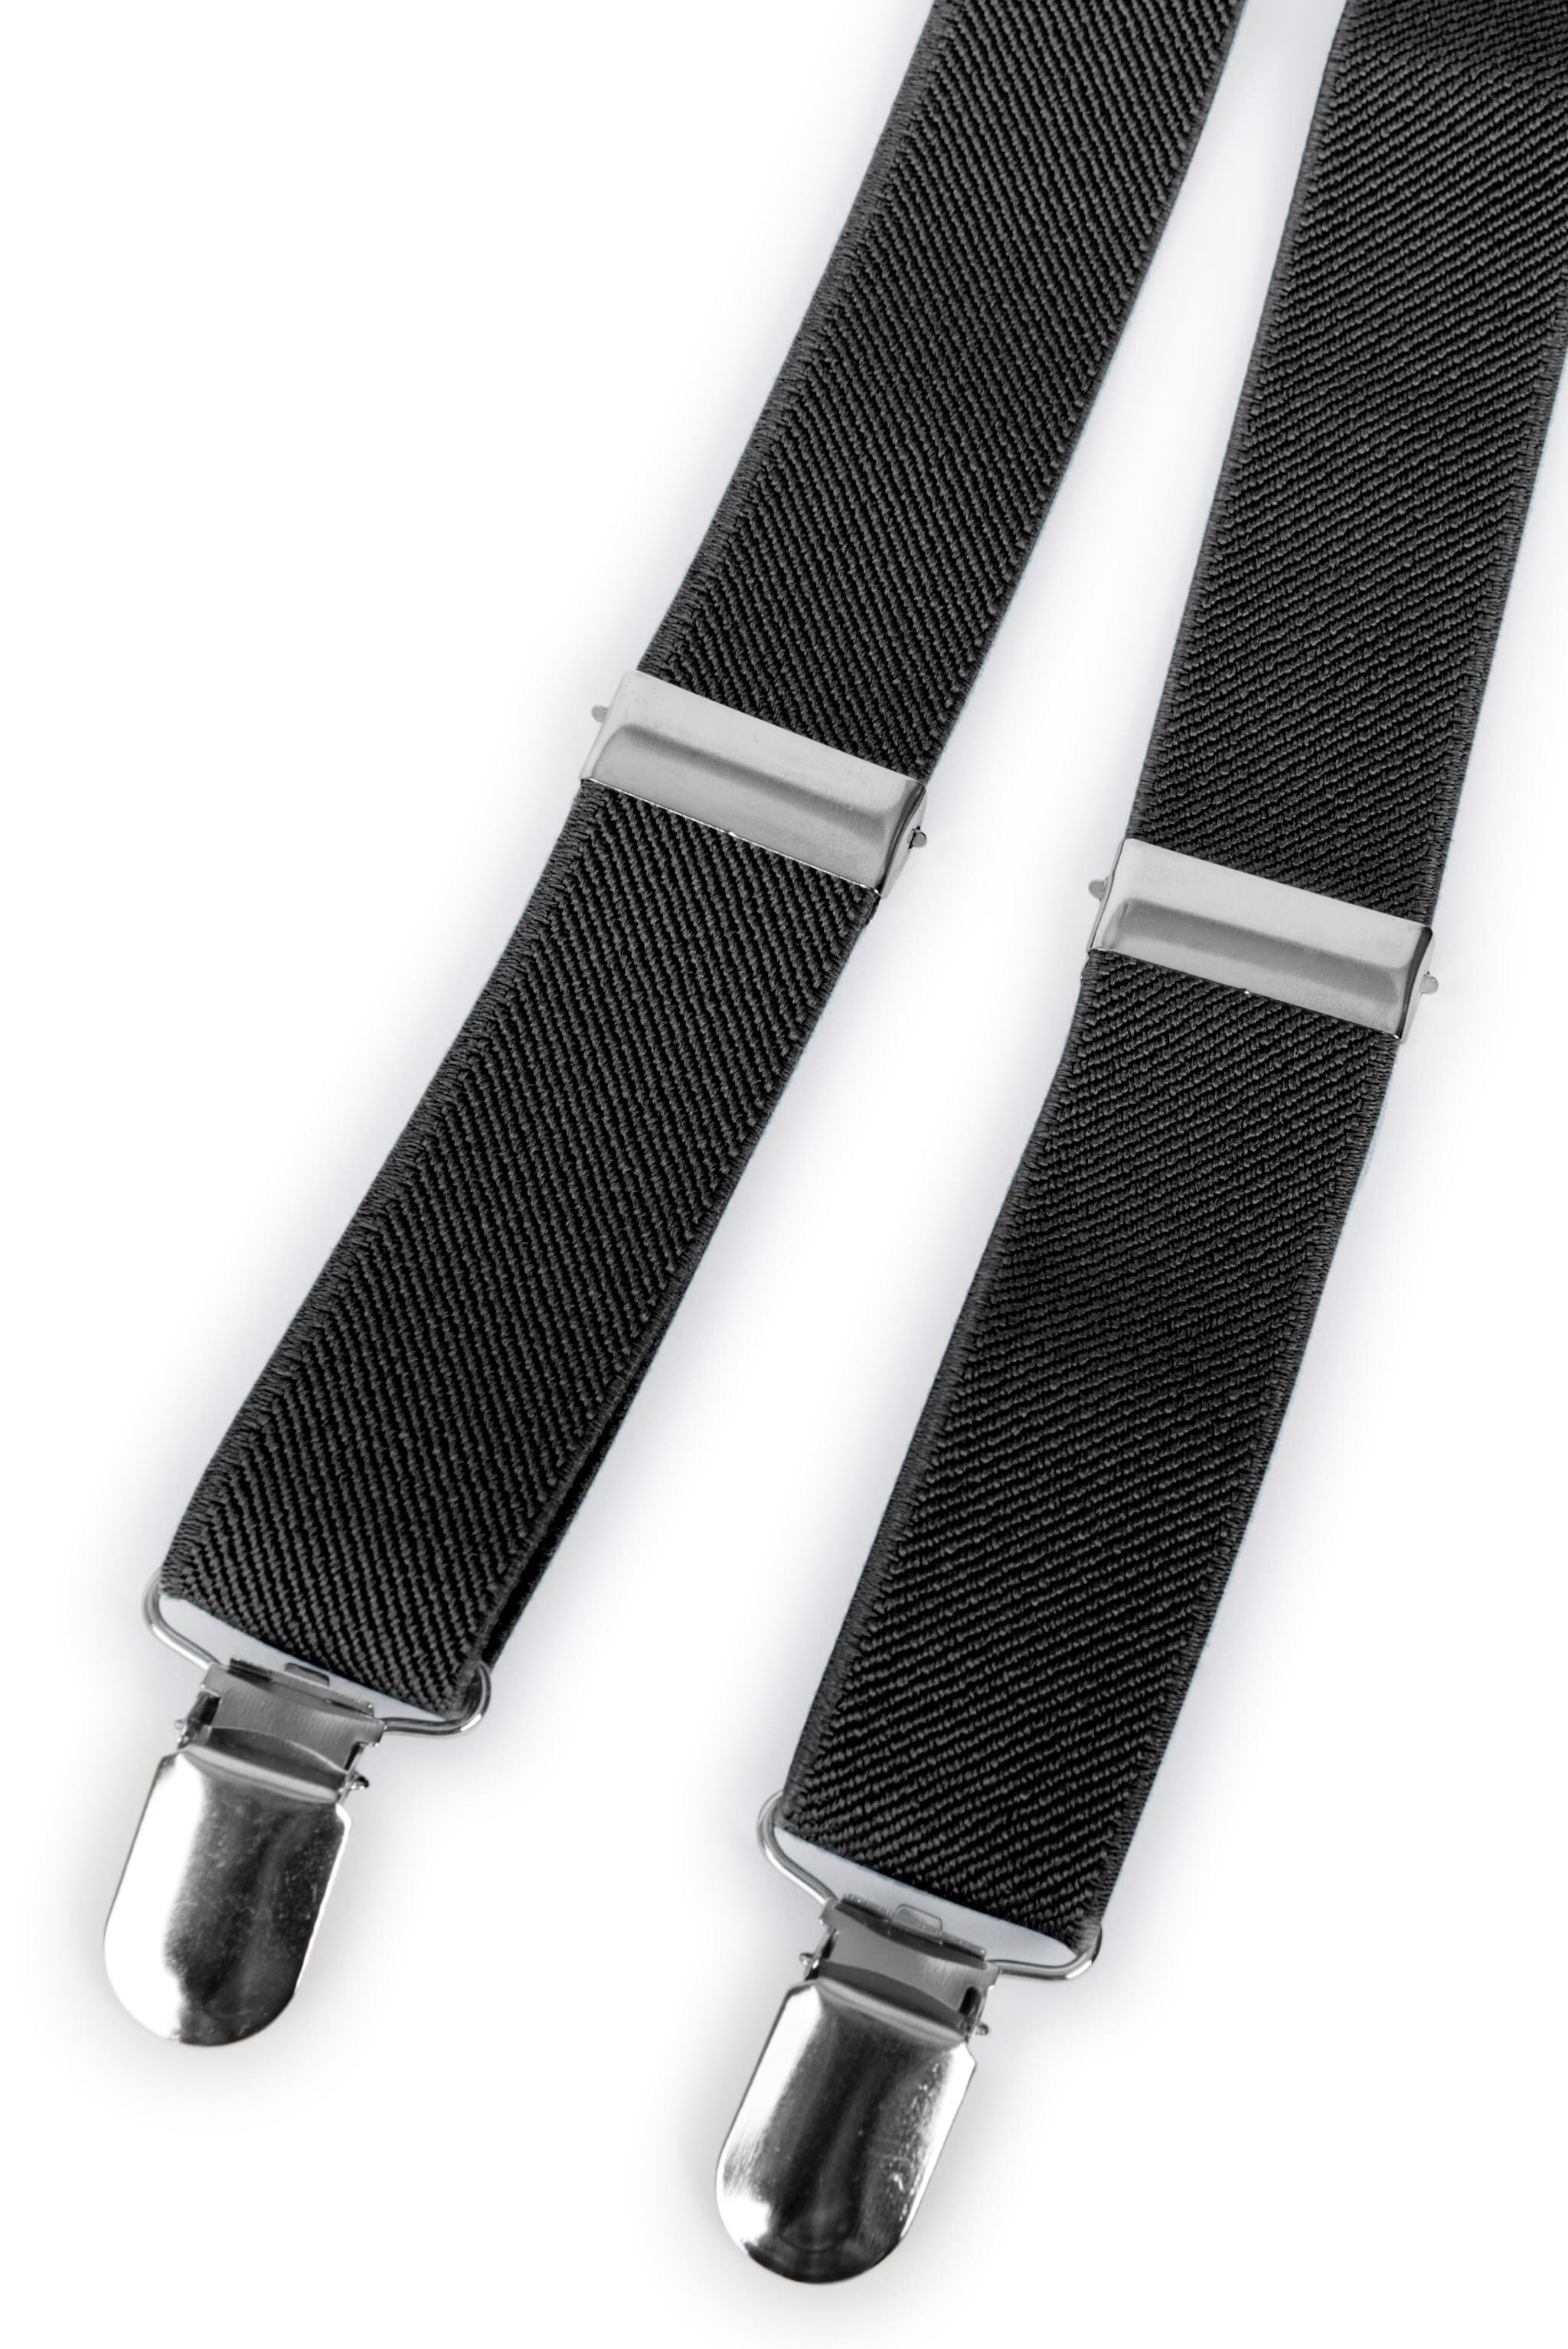 mens-black-clip-on-suspenders.jpg